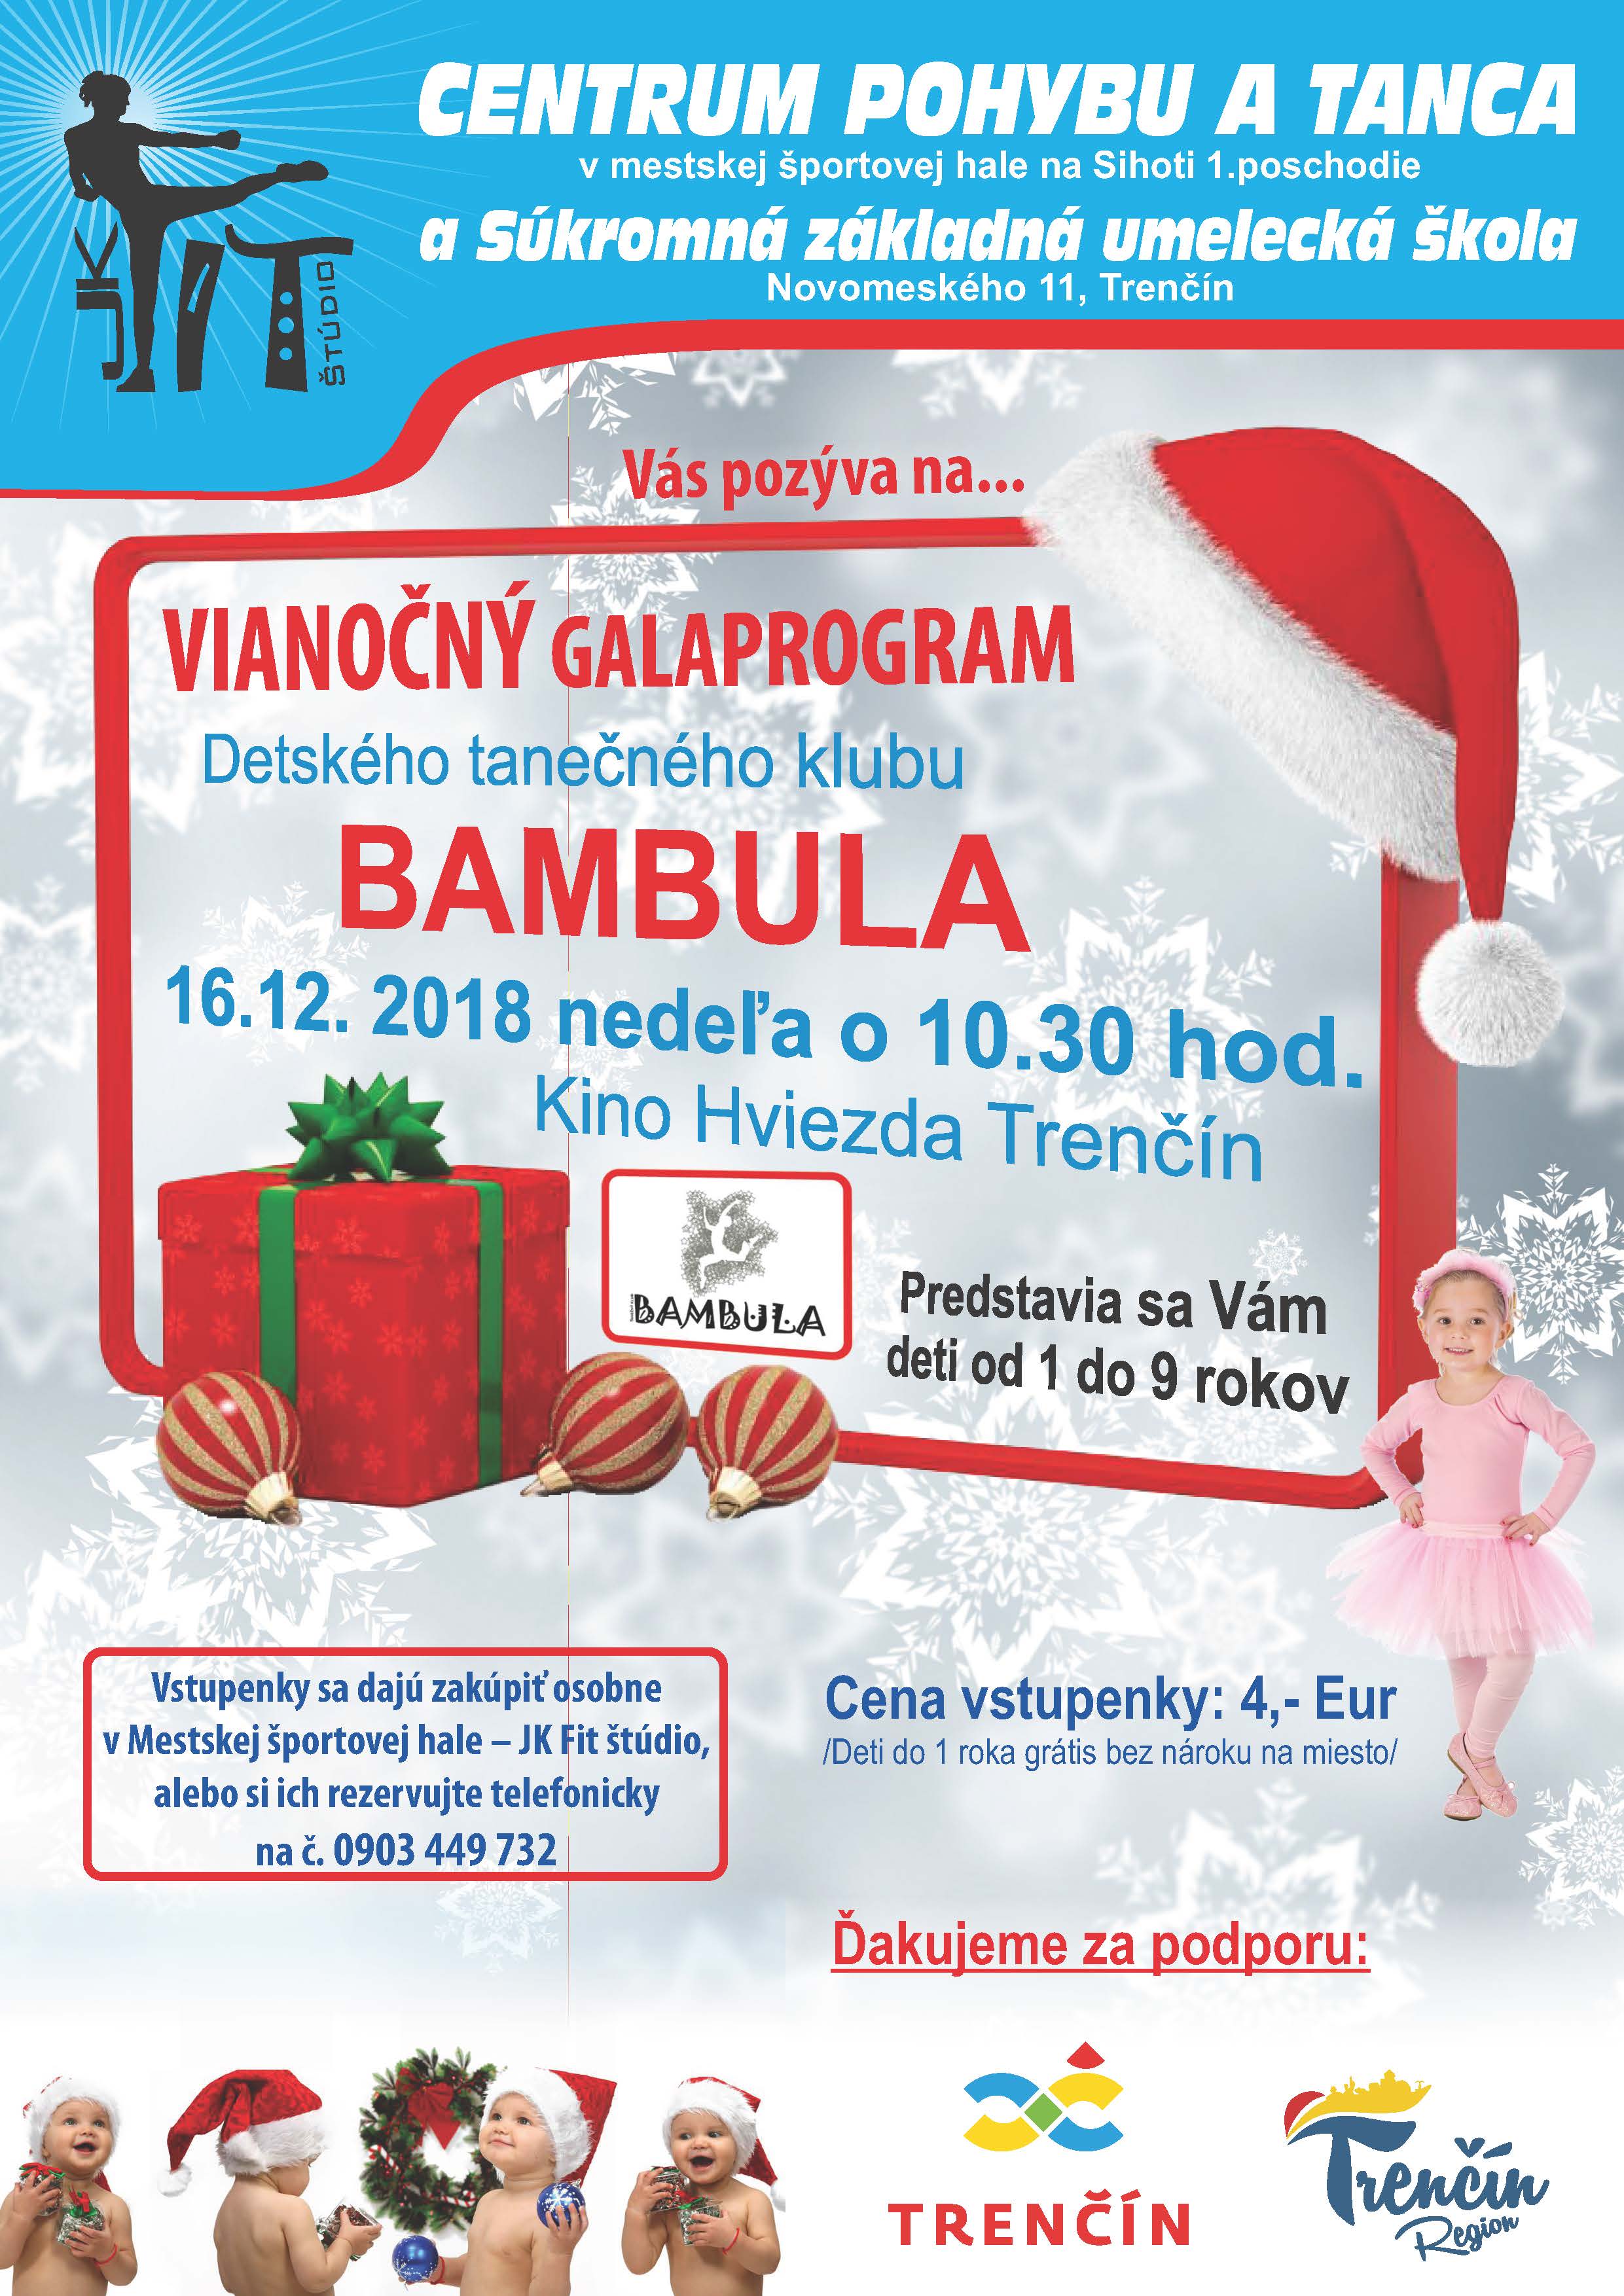 Vianočný galaprogram detského tanečného klubu BAMBULA